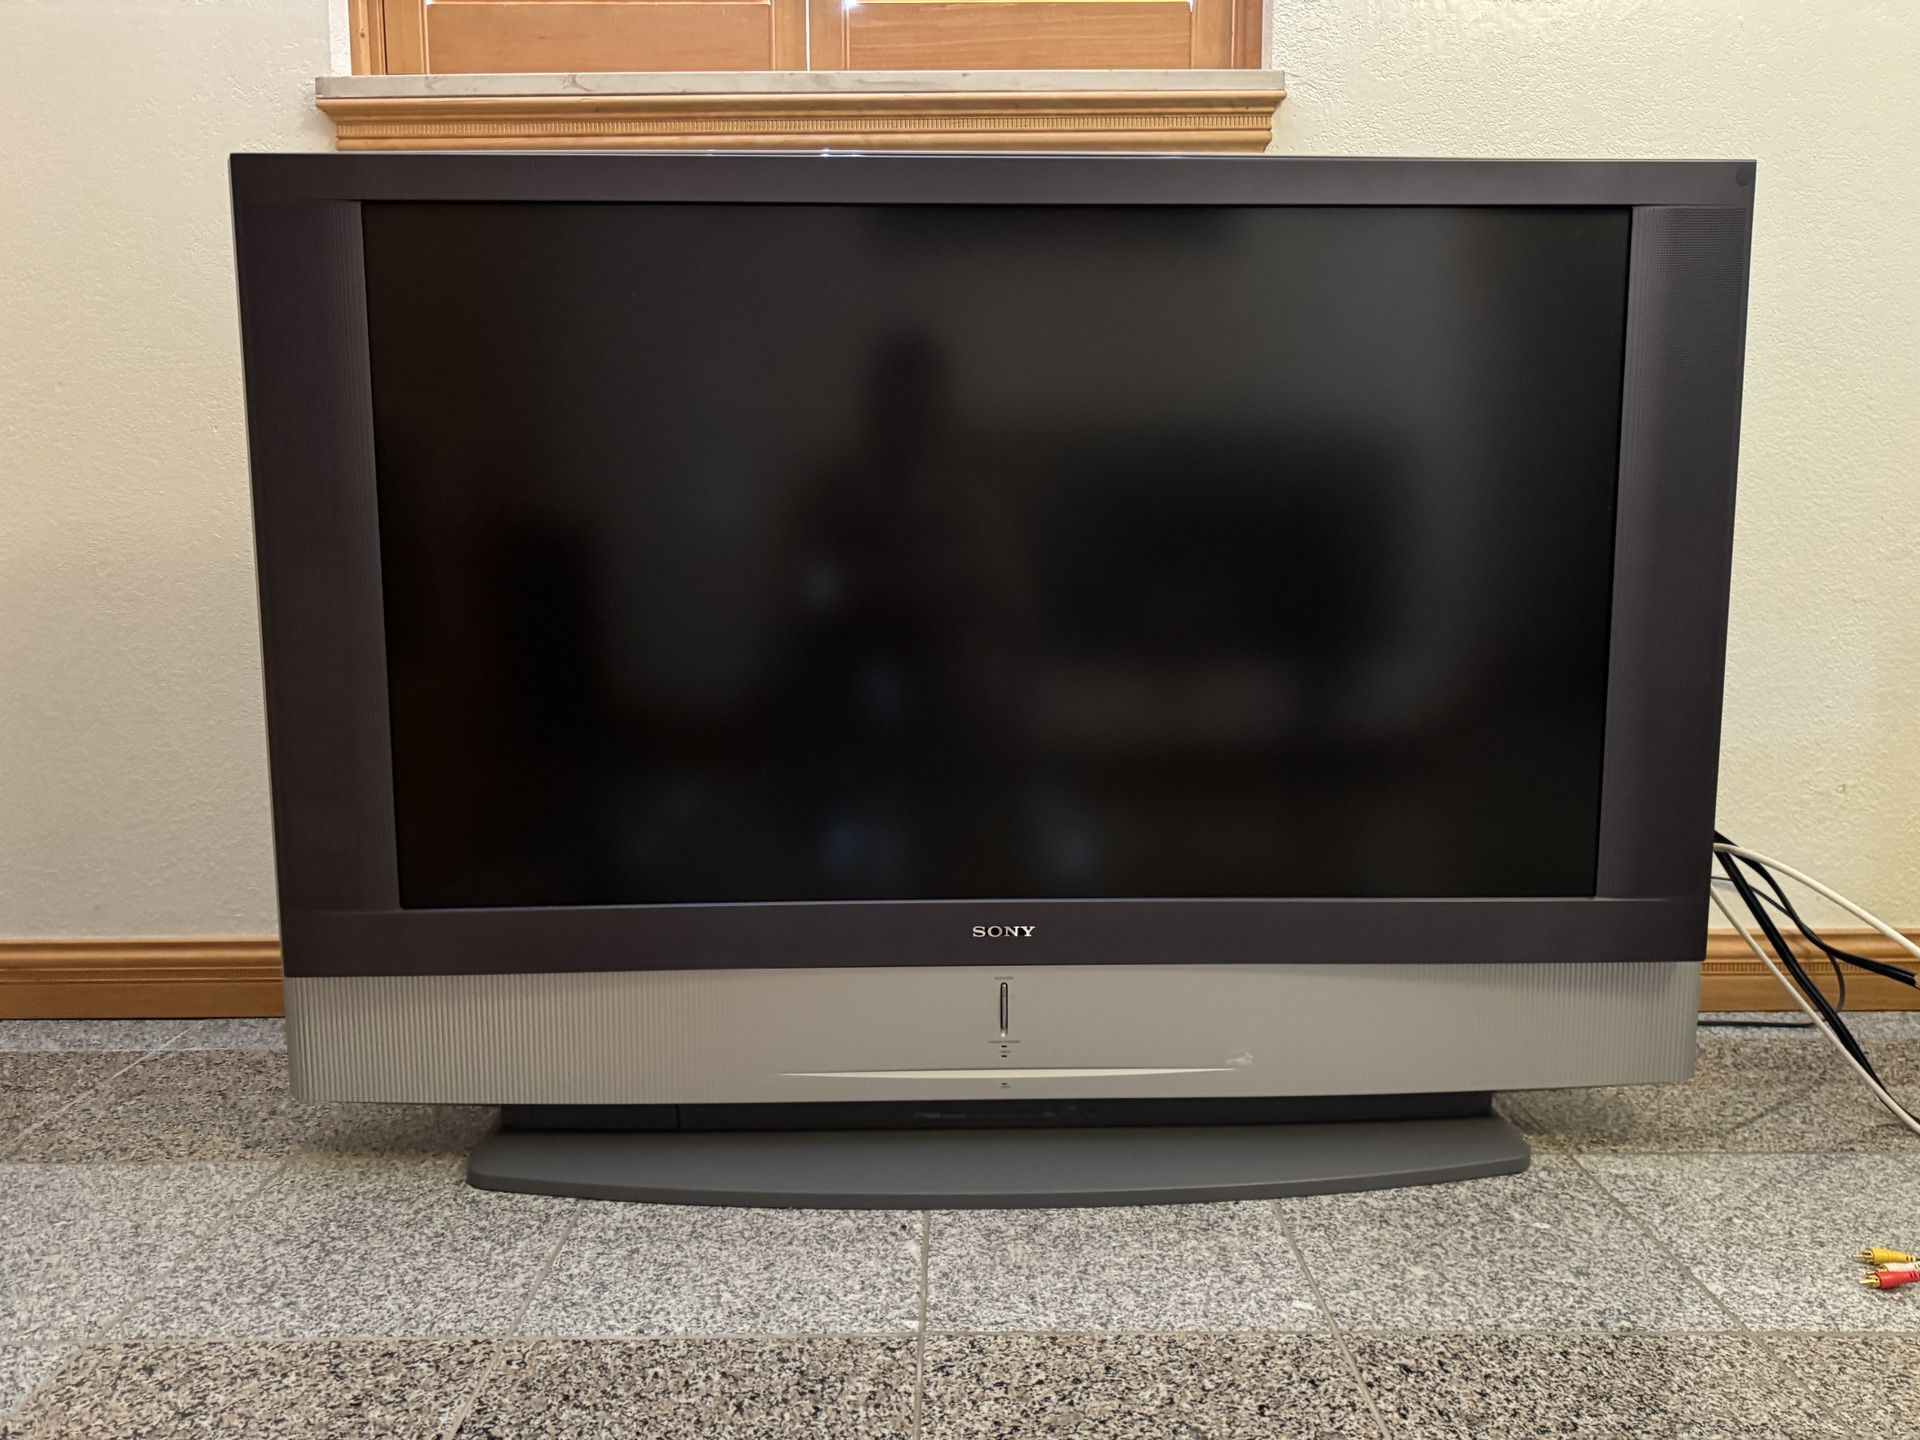 SONY 50” Grand Wega HDTV rear-projection LCD TV